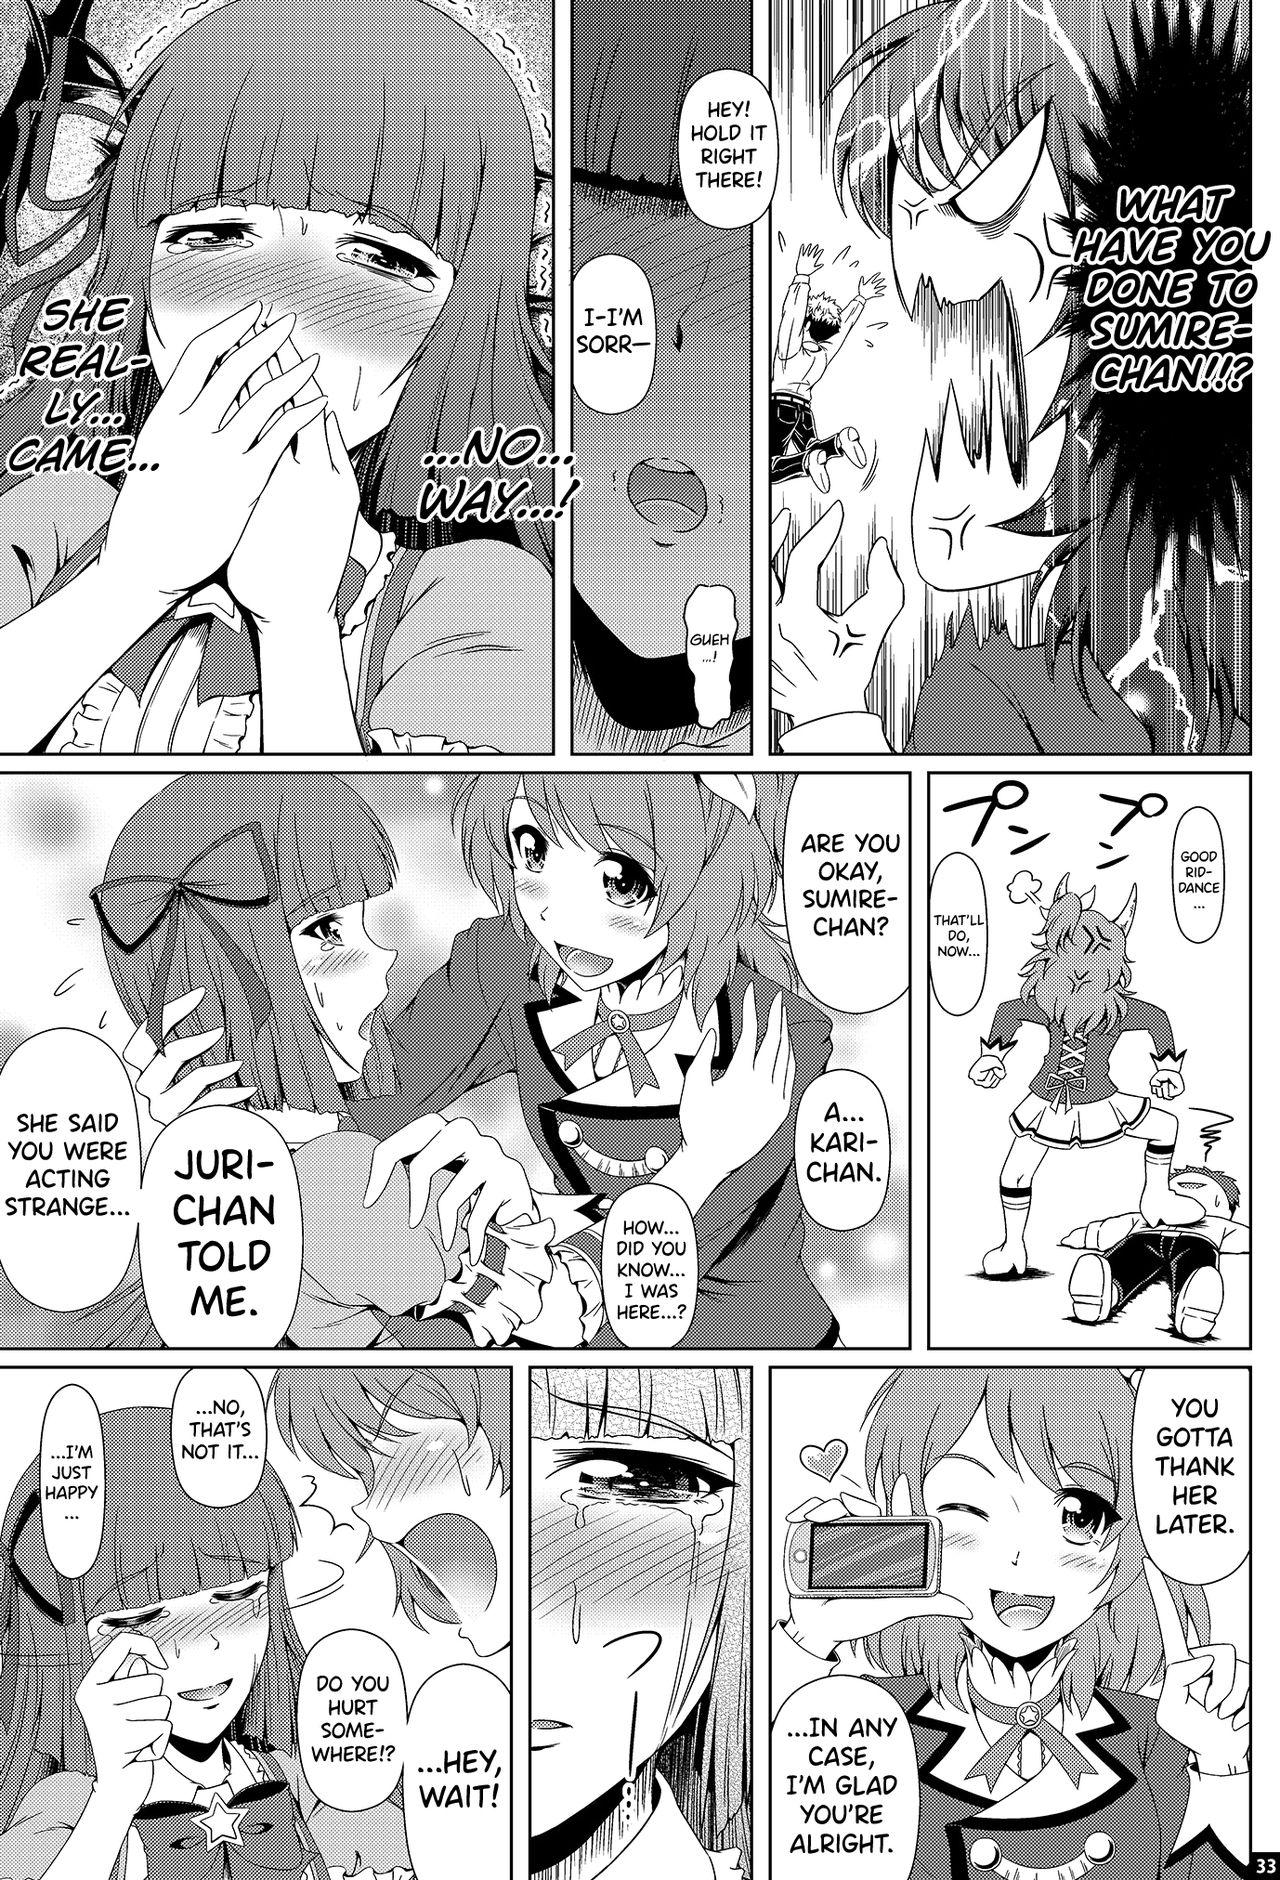 Awesome Kindan no Hyouka - Aikatsu Spreading - Page 32